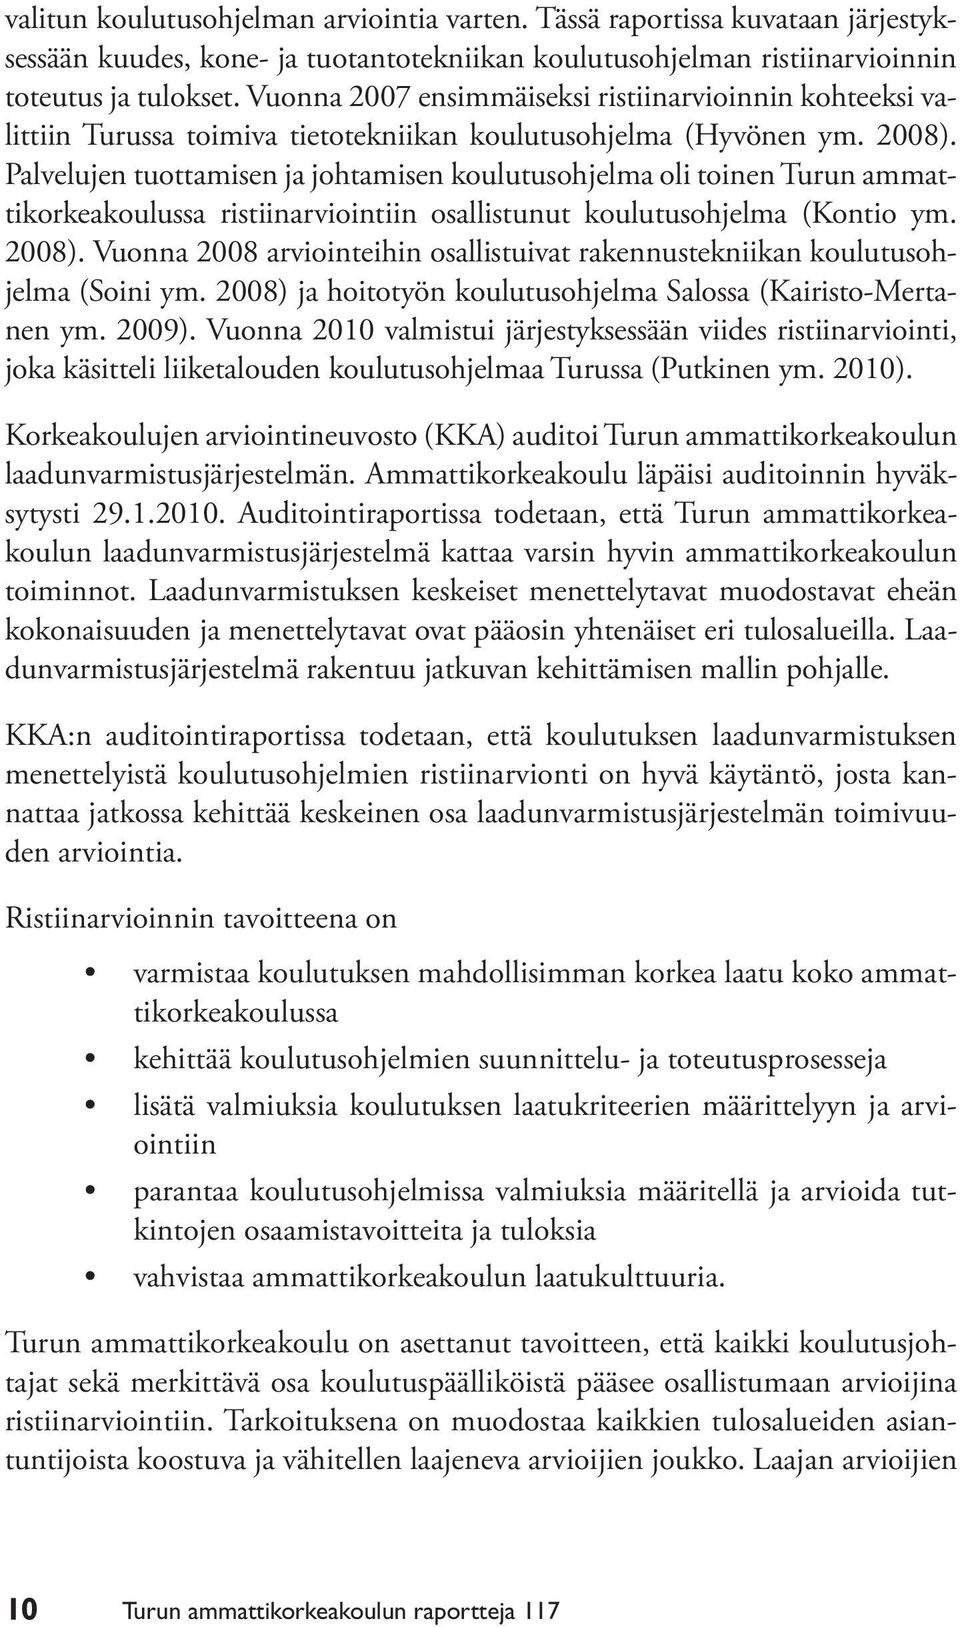 Palvelujen tuottamisen ja johtamisen koulutusohjelma oli toinen Turun ammattikorkeakoulussa ristiinarviointiin osallistunut koulutusohjelma (Kontio ym. 2008).